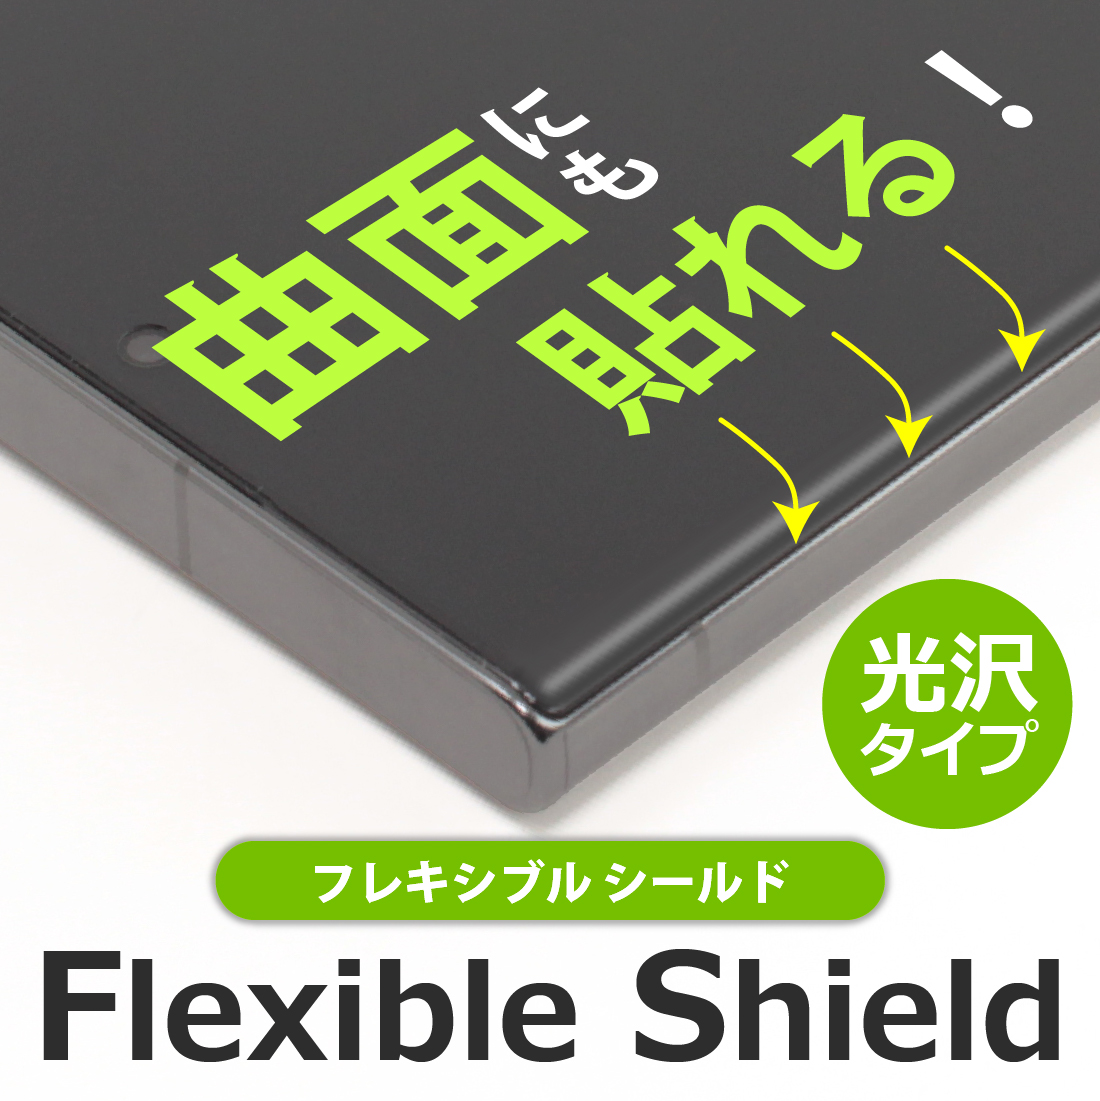 曲面にも貼れる!  Flexible Shield